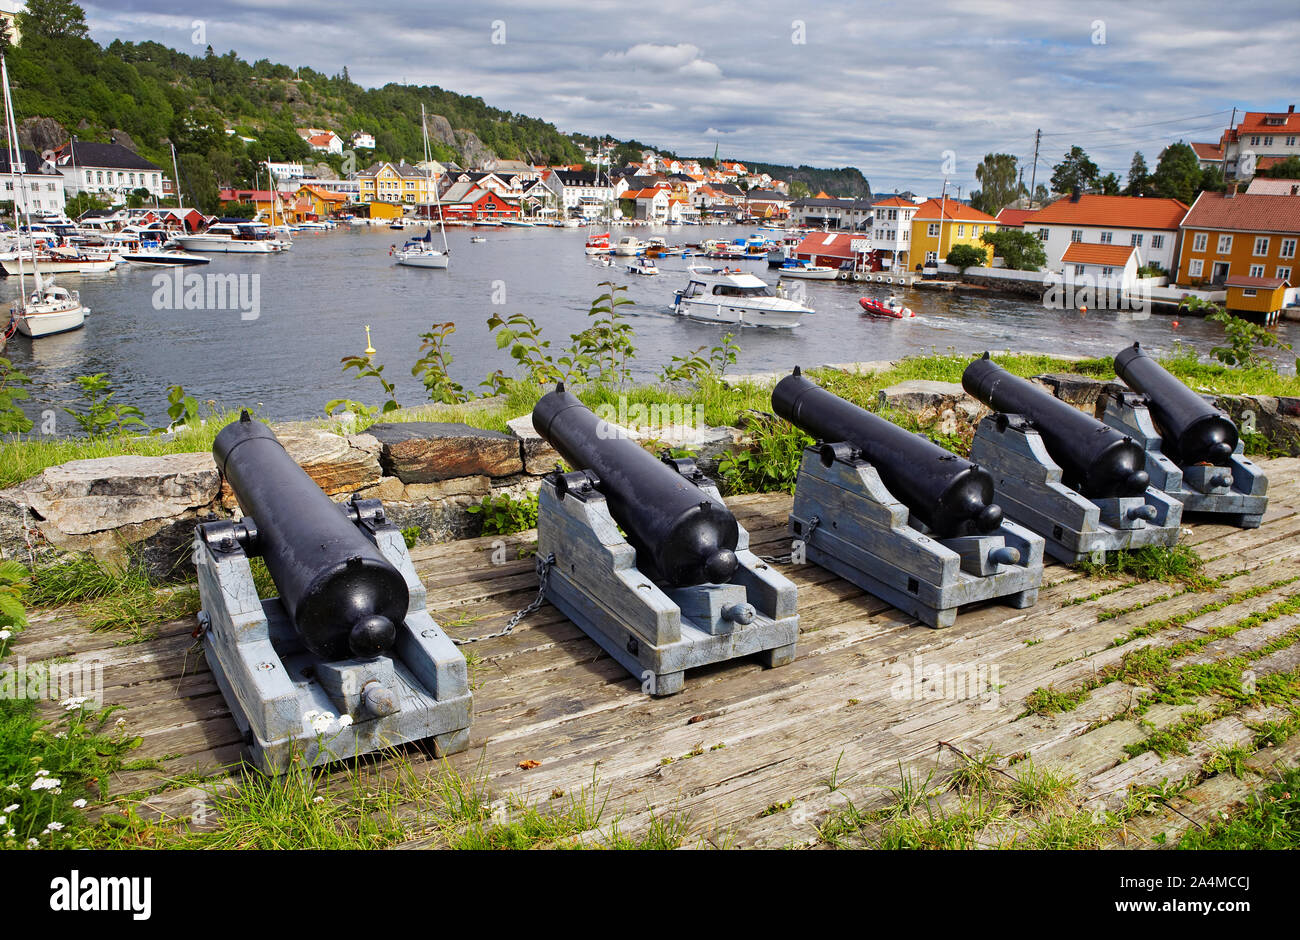 Cannons near Kragerø in Sørlandet. Stock Photo